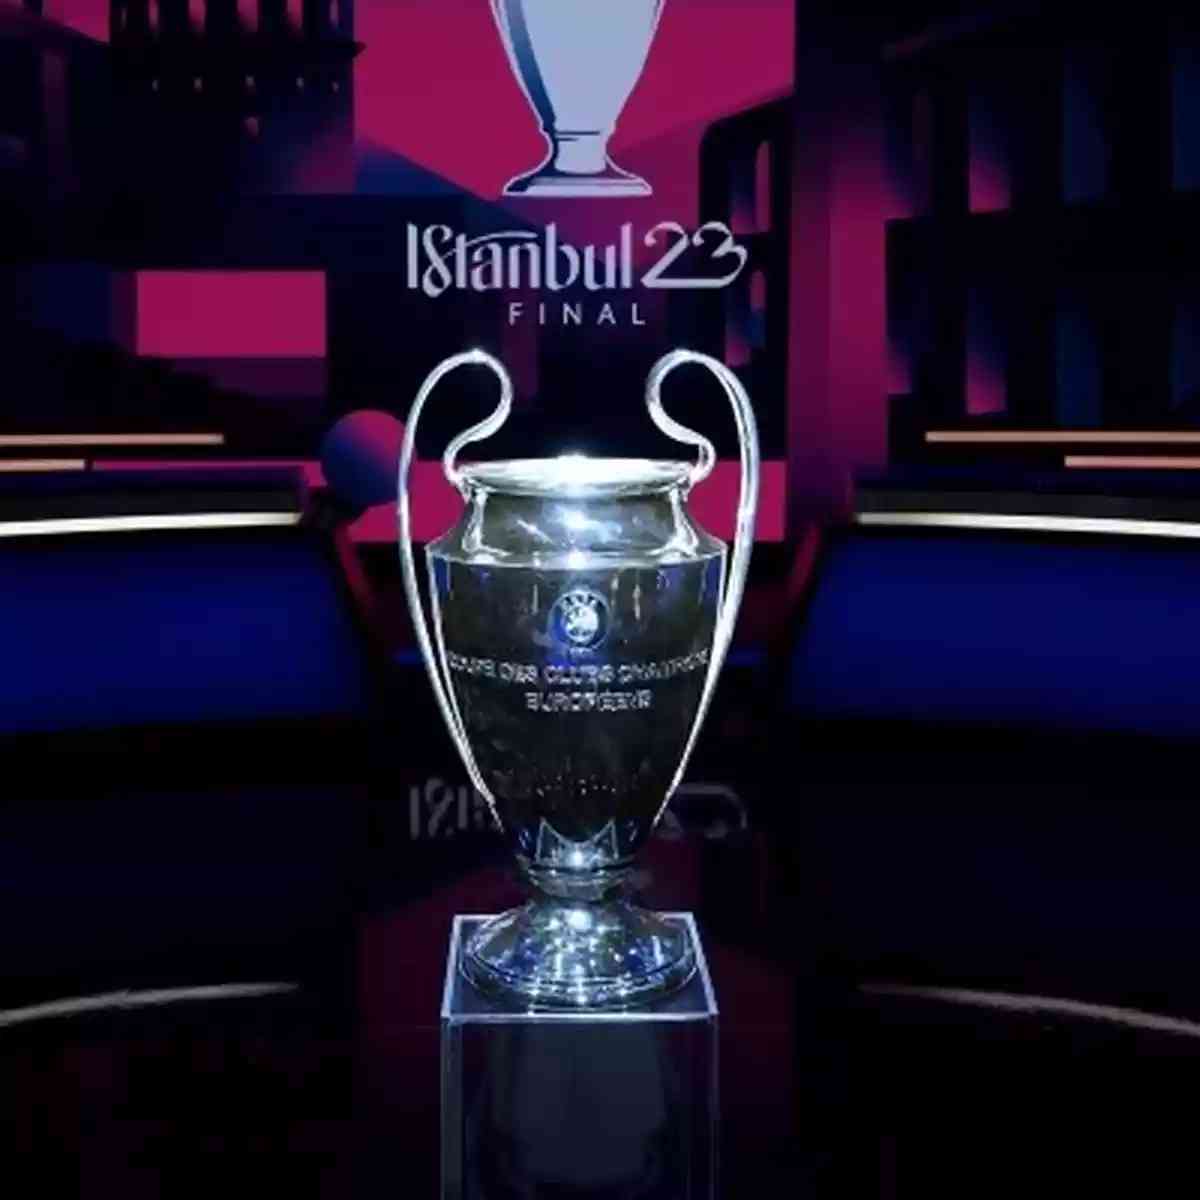 Real Madrid encara o Chelsea nas quartas de final da Champions; confira  todos os confrontos - Champions League - Br - Futboo.com